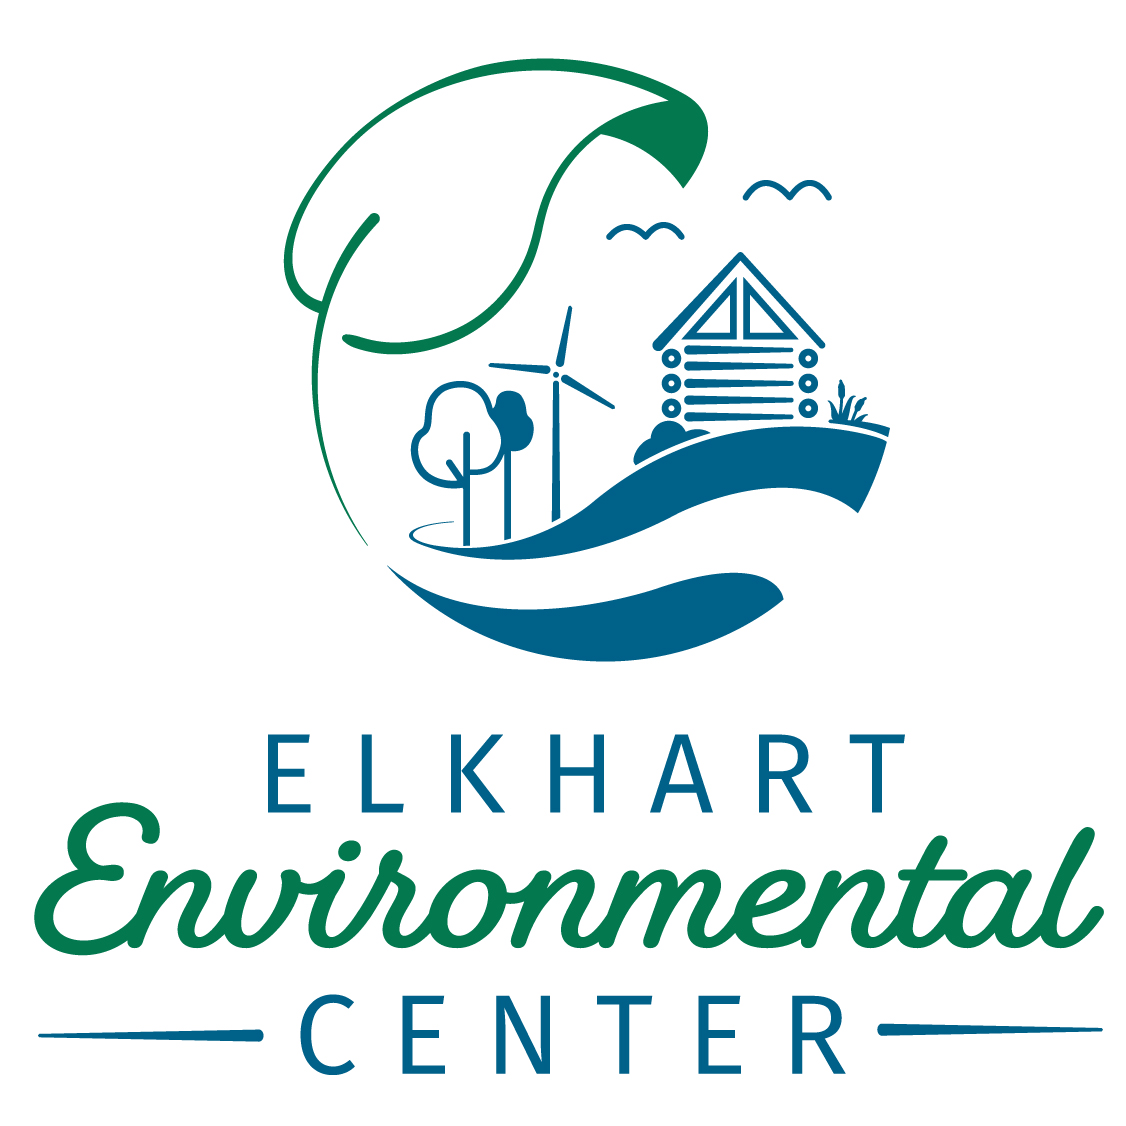 Elkhart Environmental Center